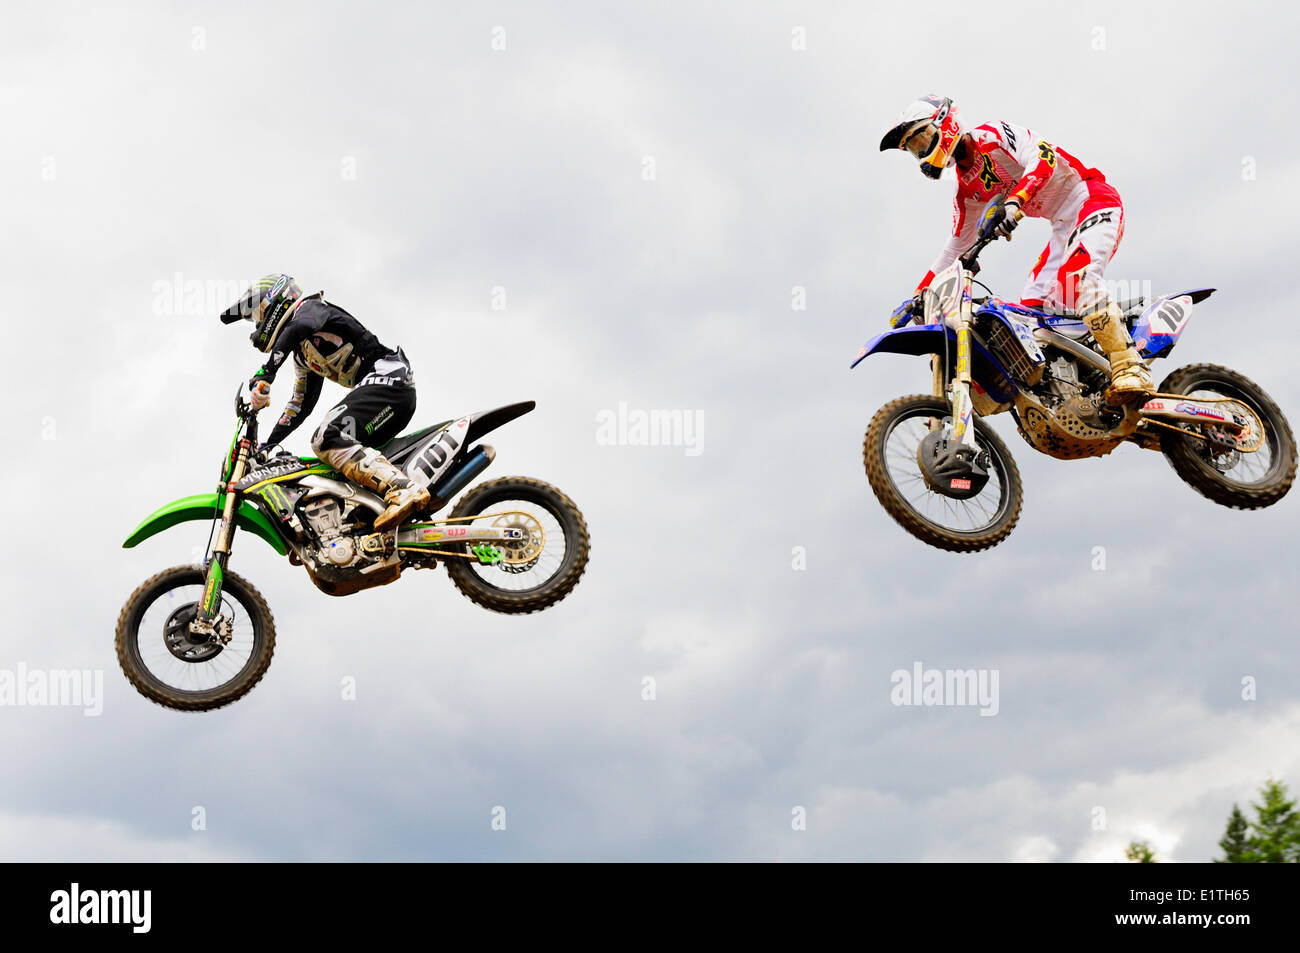 Zwei Motocross Fahrer, #101 und #10, sind nach einem Sprung bei den Monster Energy Motocross Nationals an der Strecke von Ödland in der Luft Stockfoto